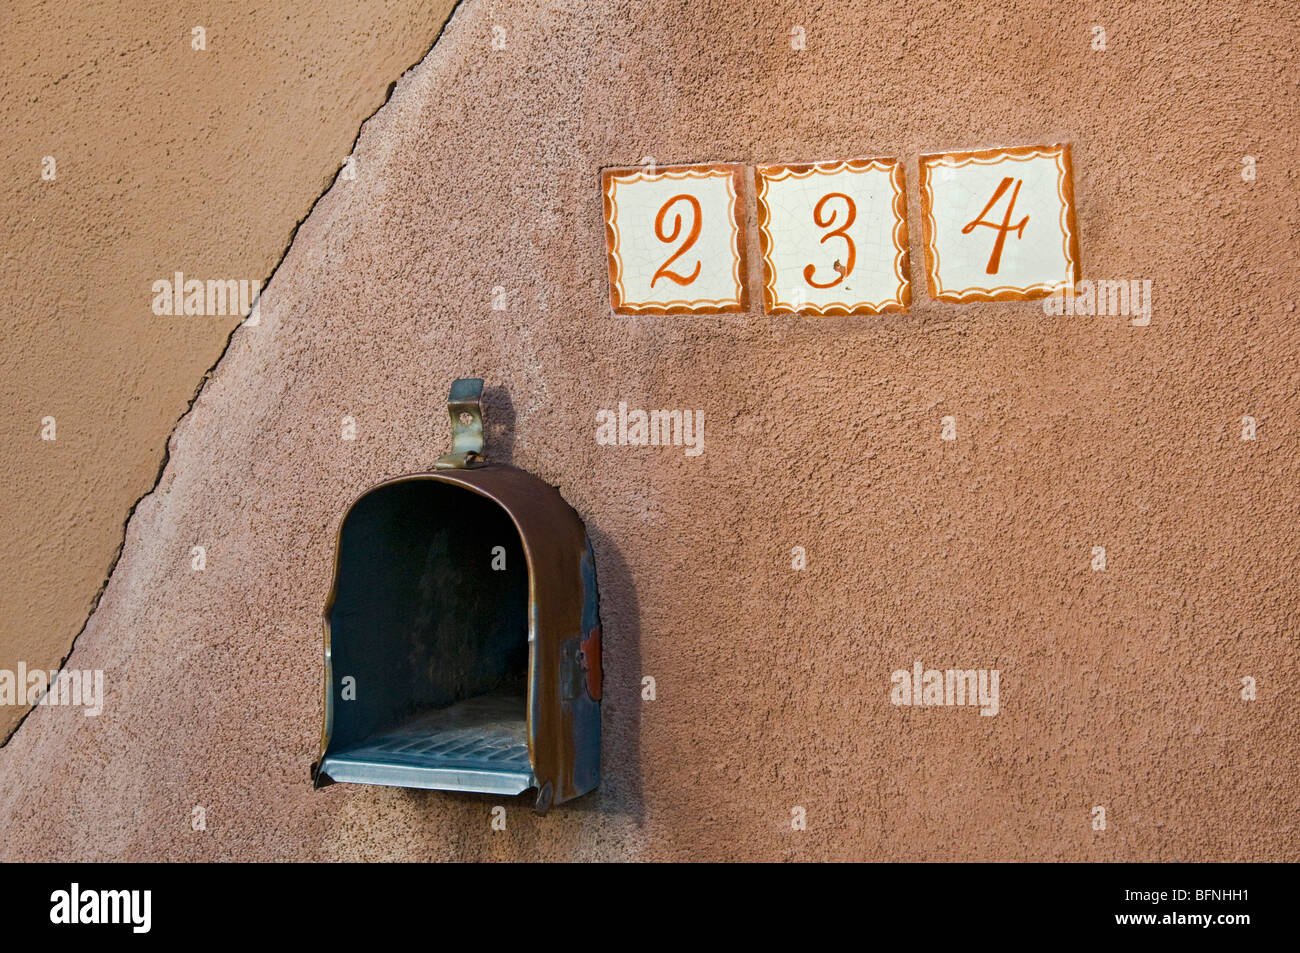 New Mexico Santa Fe Mailbox Stock Photo